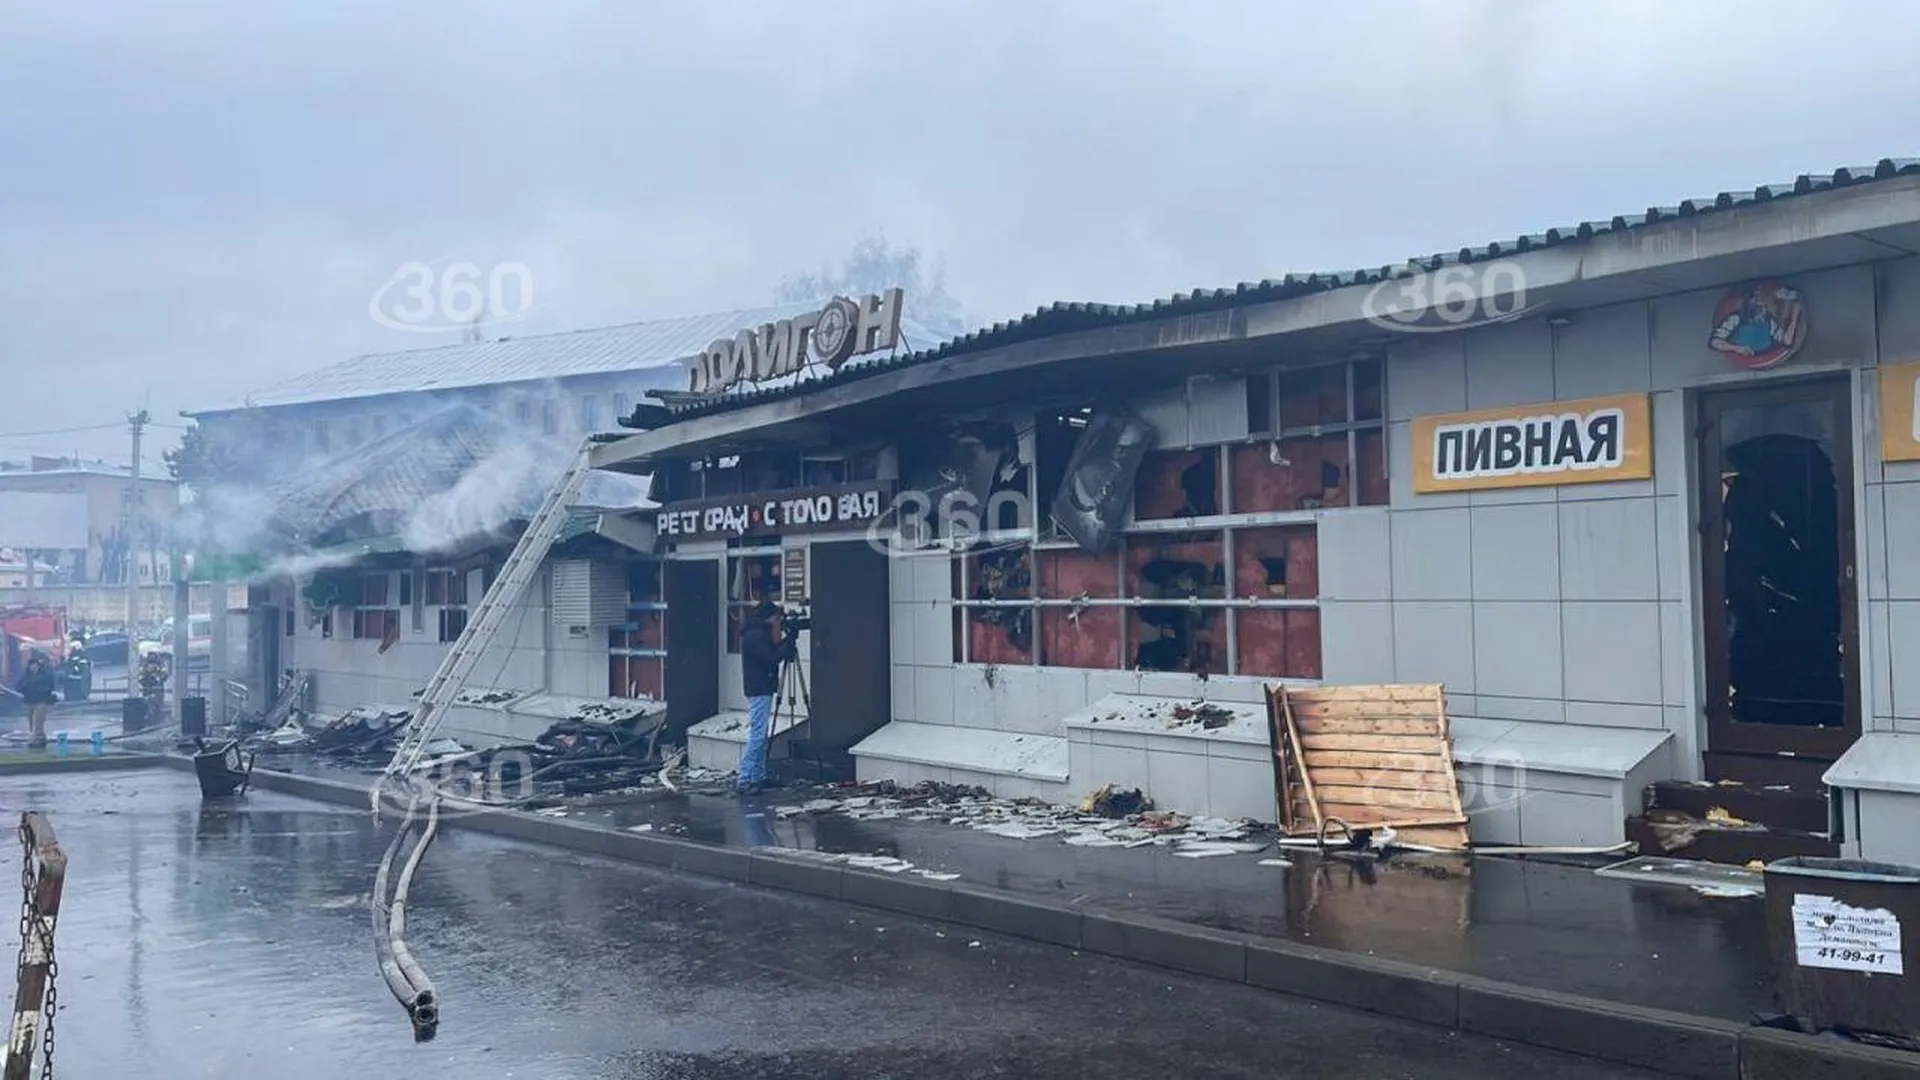 Владелец здания сгоревшего кафе «Полигон» обжаловал решение суда об аресте